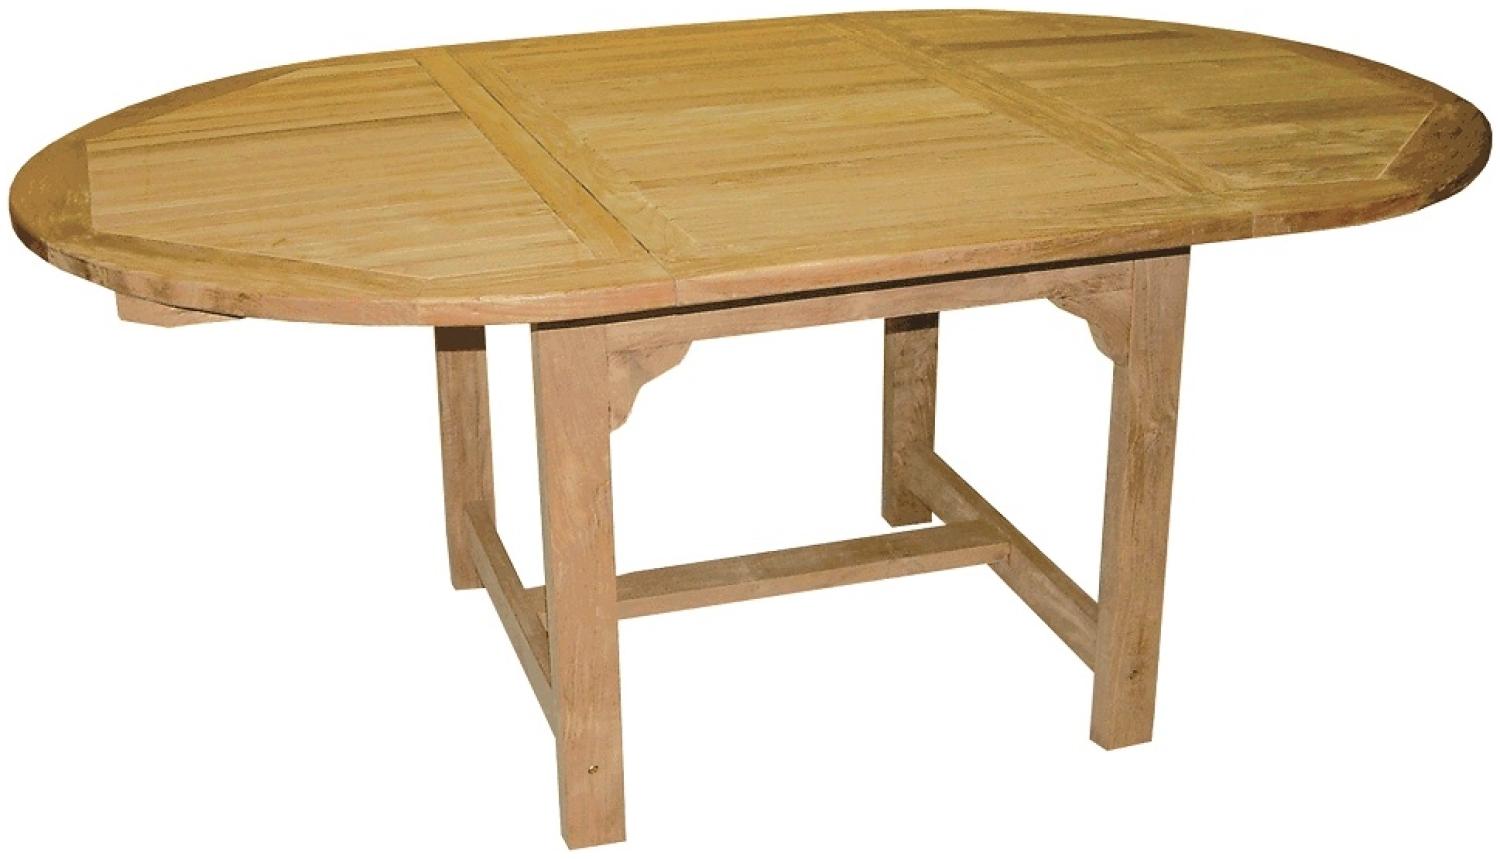 Premium Teak Ausziehtisch oval Tisch Gartentisch Teakmöbel ausziehbar 180 cm Bild 1